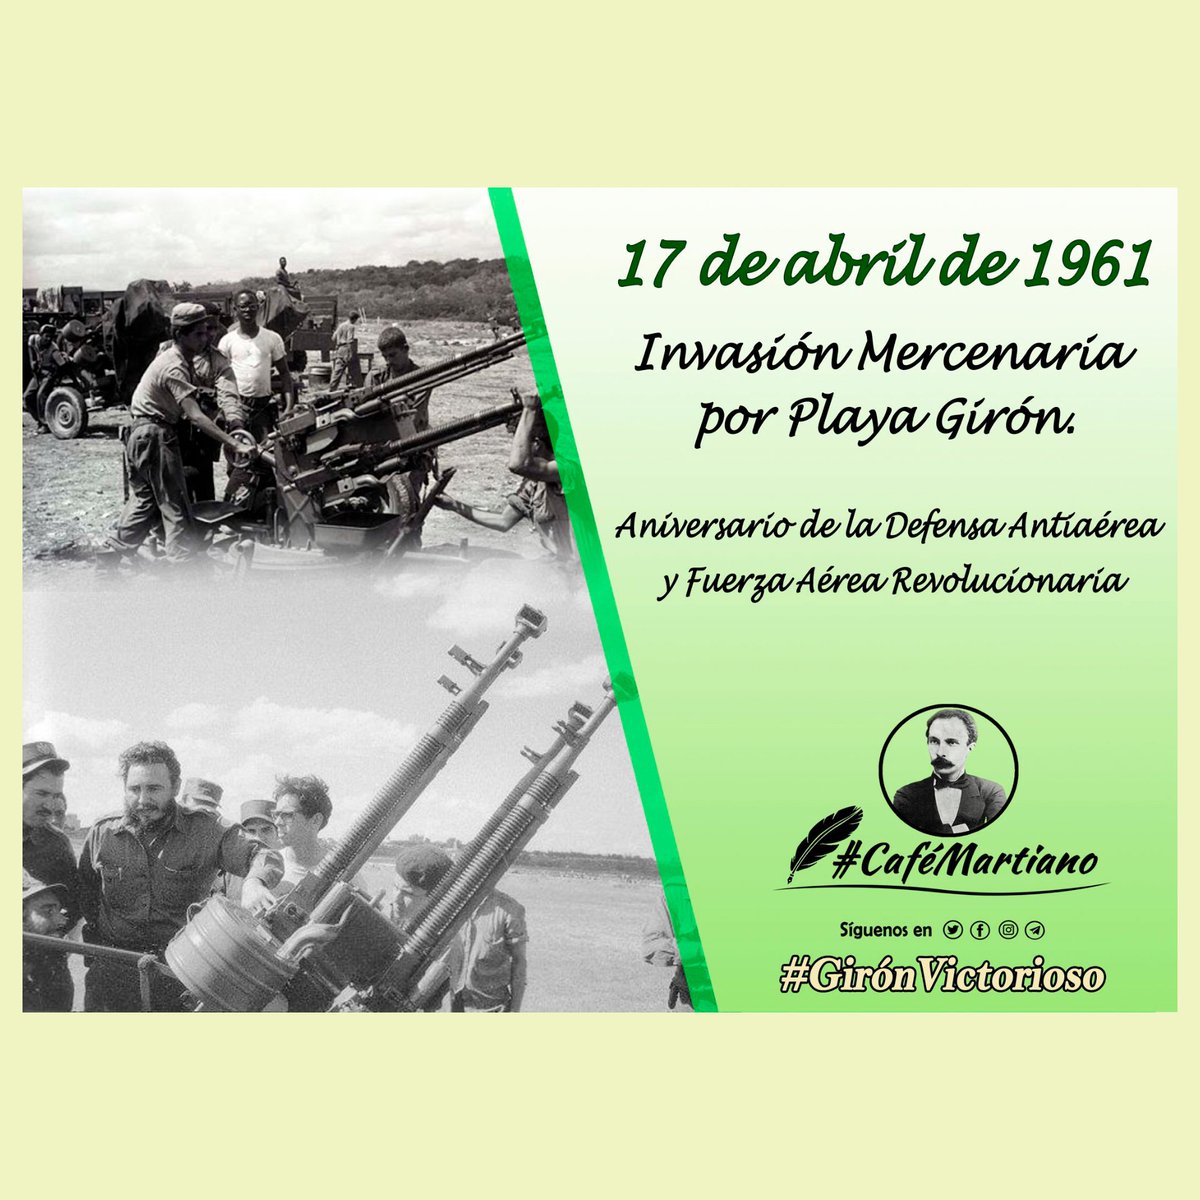 #InderGuisa . Los mercenarios que el 17 de abril de 1961 desembarcaron por Playa Girón encontraron un bastión inexpugnable, con una profunda conciencia revolucionaria y humanista, una aplastante derrota que no calcularon los enemigos. #GirónVictorioso . #CubaViveEnHistoria